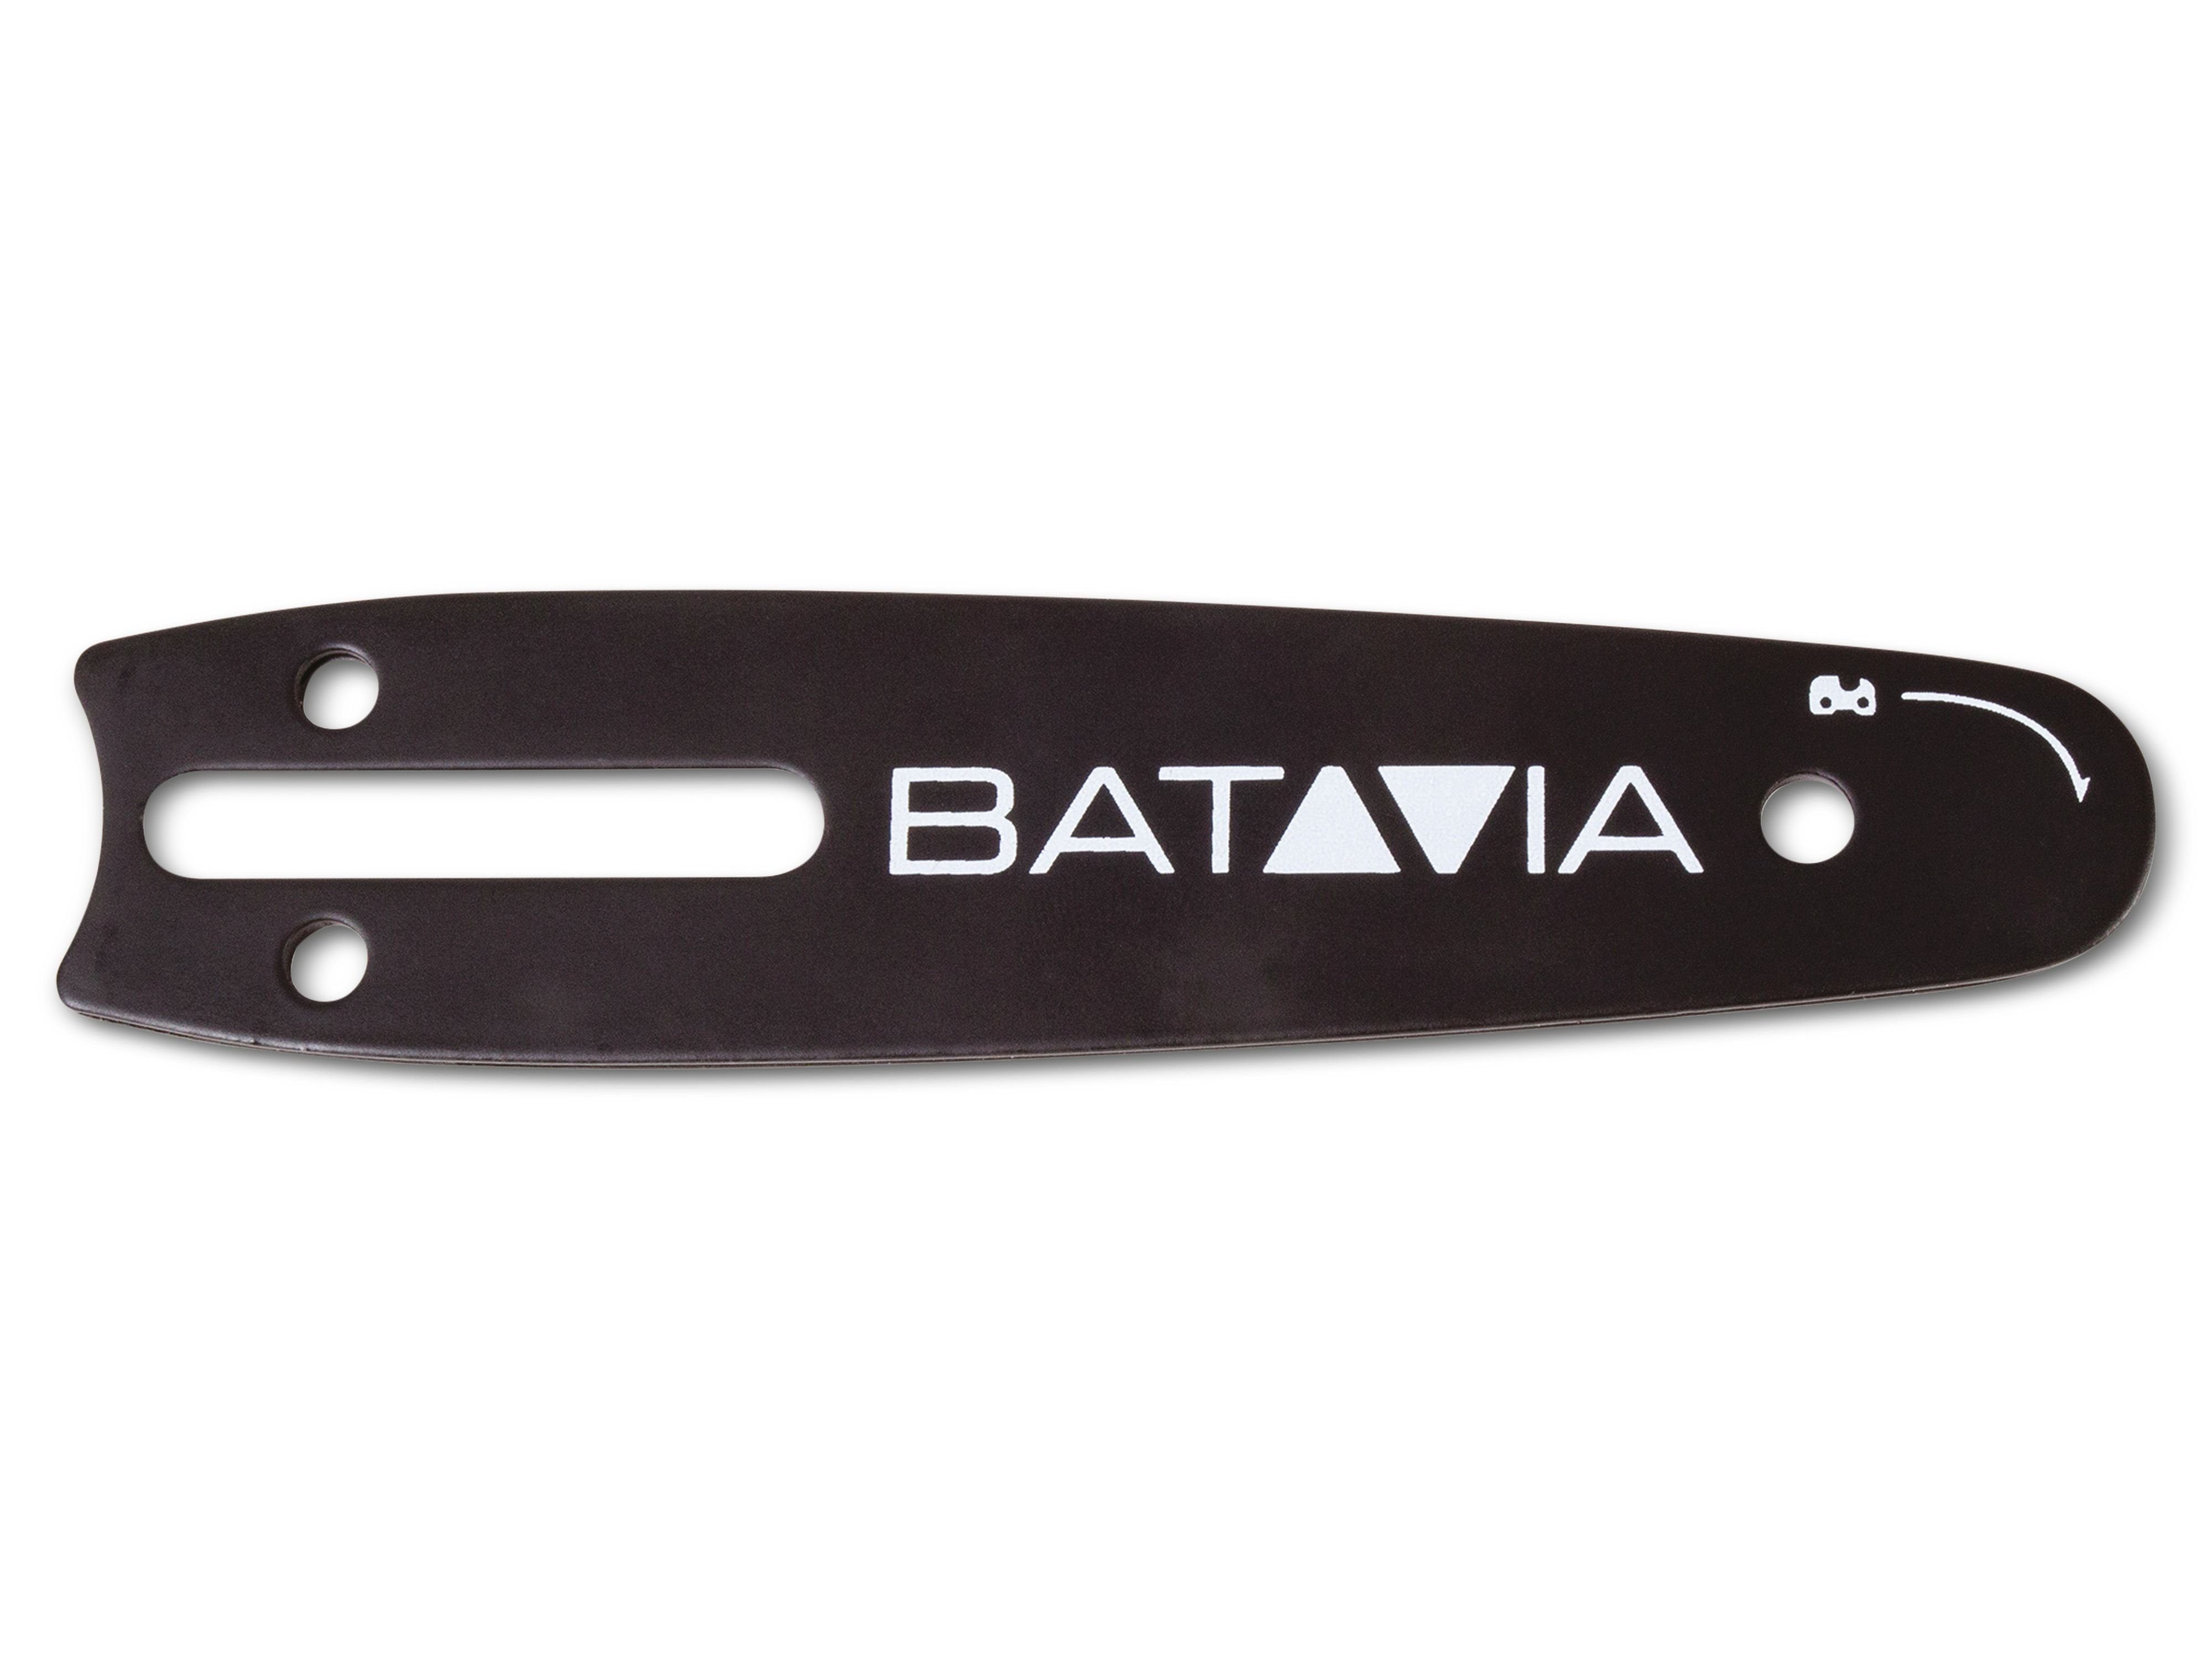 Batavia Fräse Sägekettenschwert Nexxsaw V2 BATAVIA